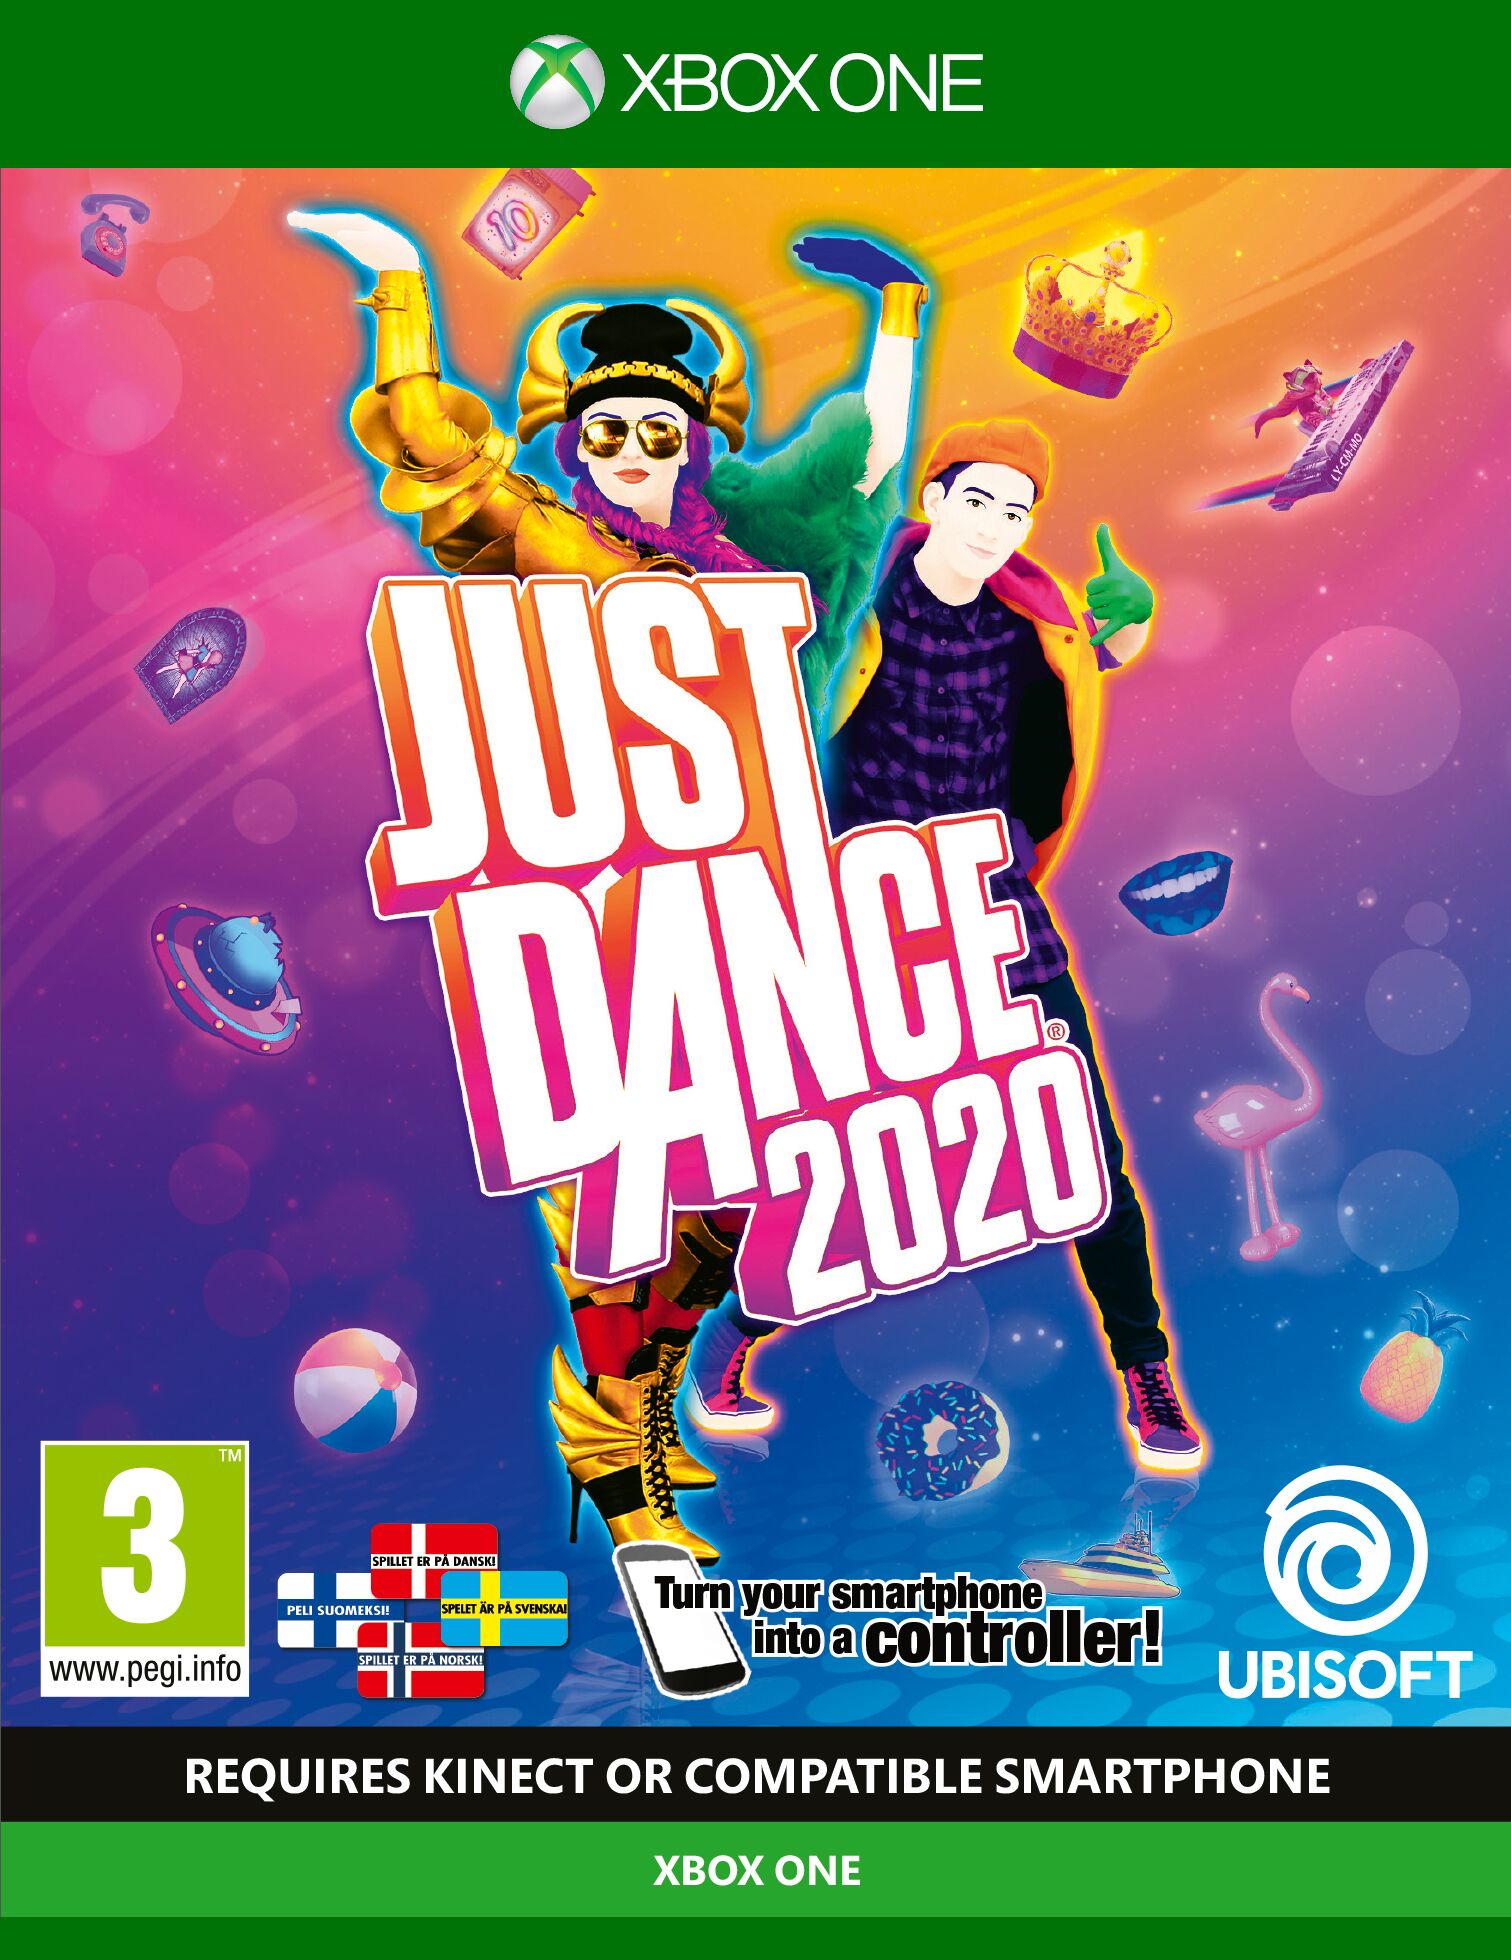 Buy Just Dance 2020 (UK/Nordic) - Xbox One - Standard - English